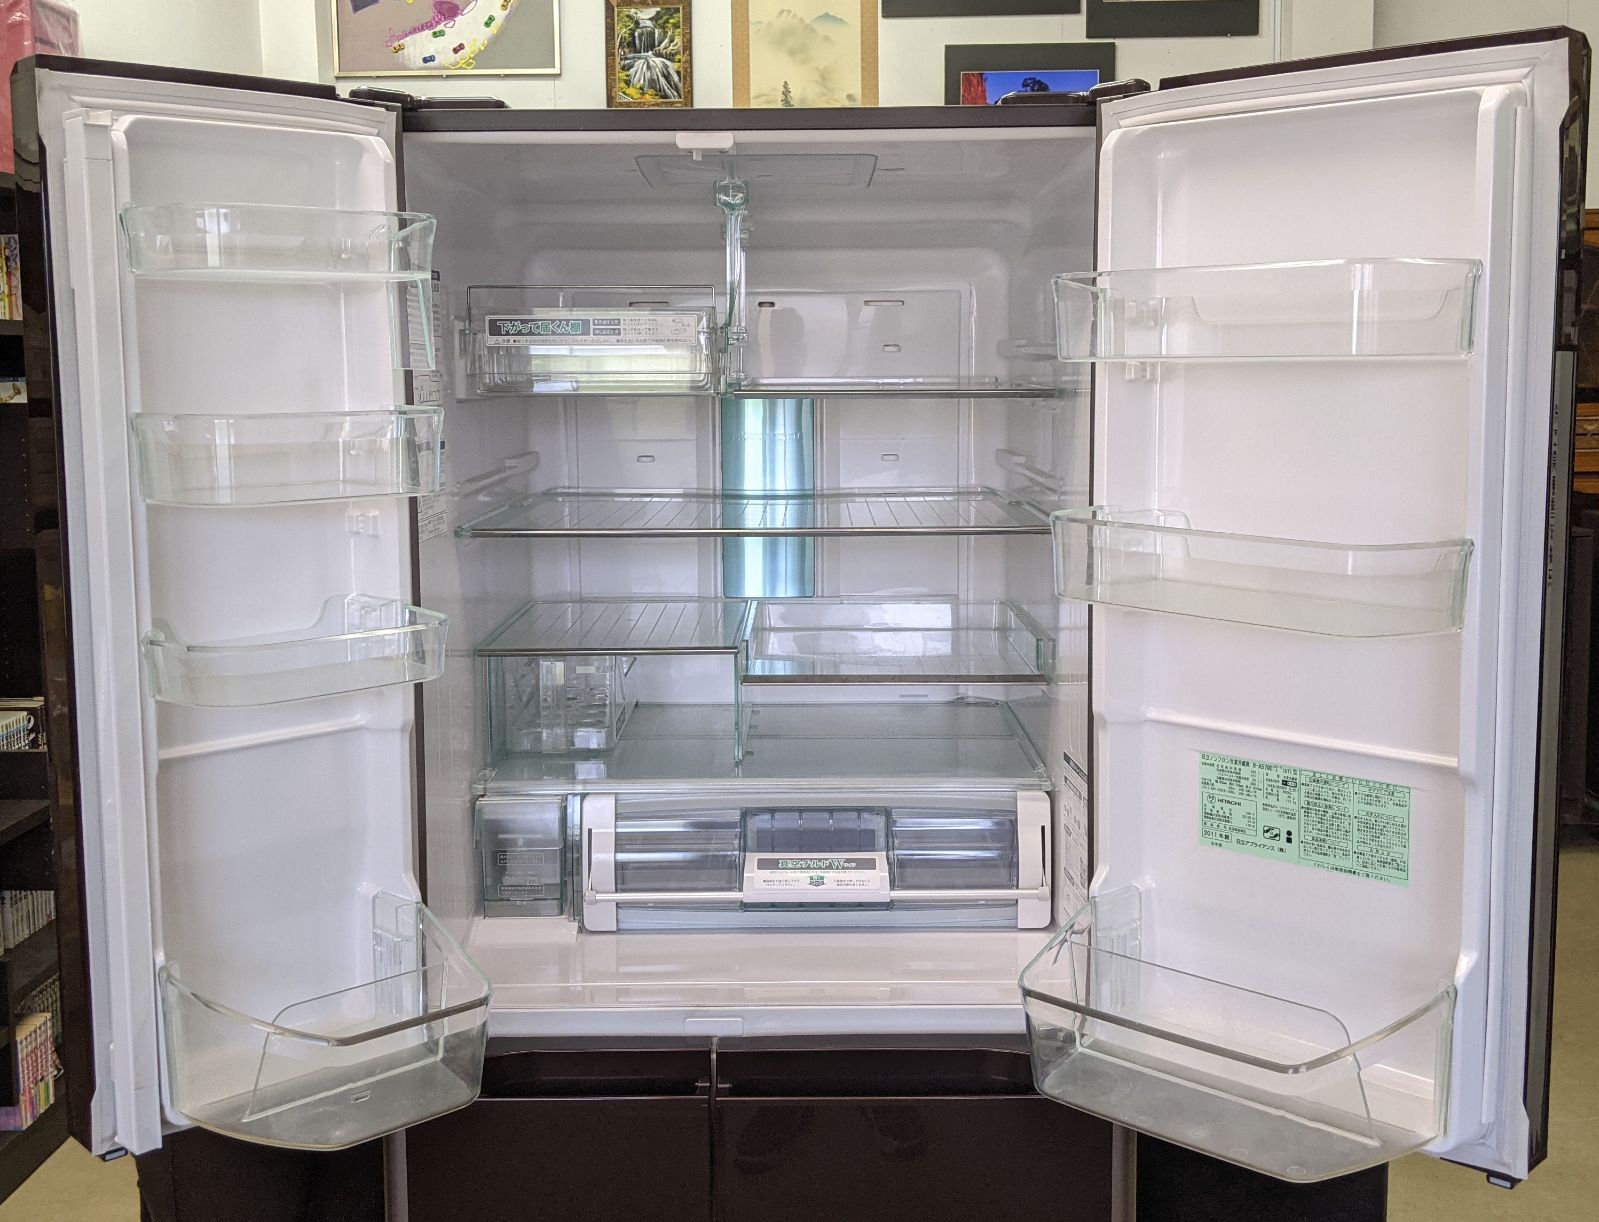 日立ノンフロン冷凍冷蔵庫(6ドア/R-A5700-1 XT型/2011年製) - 住まいの